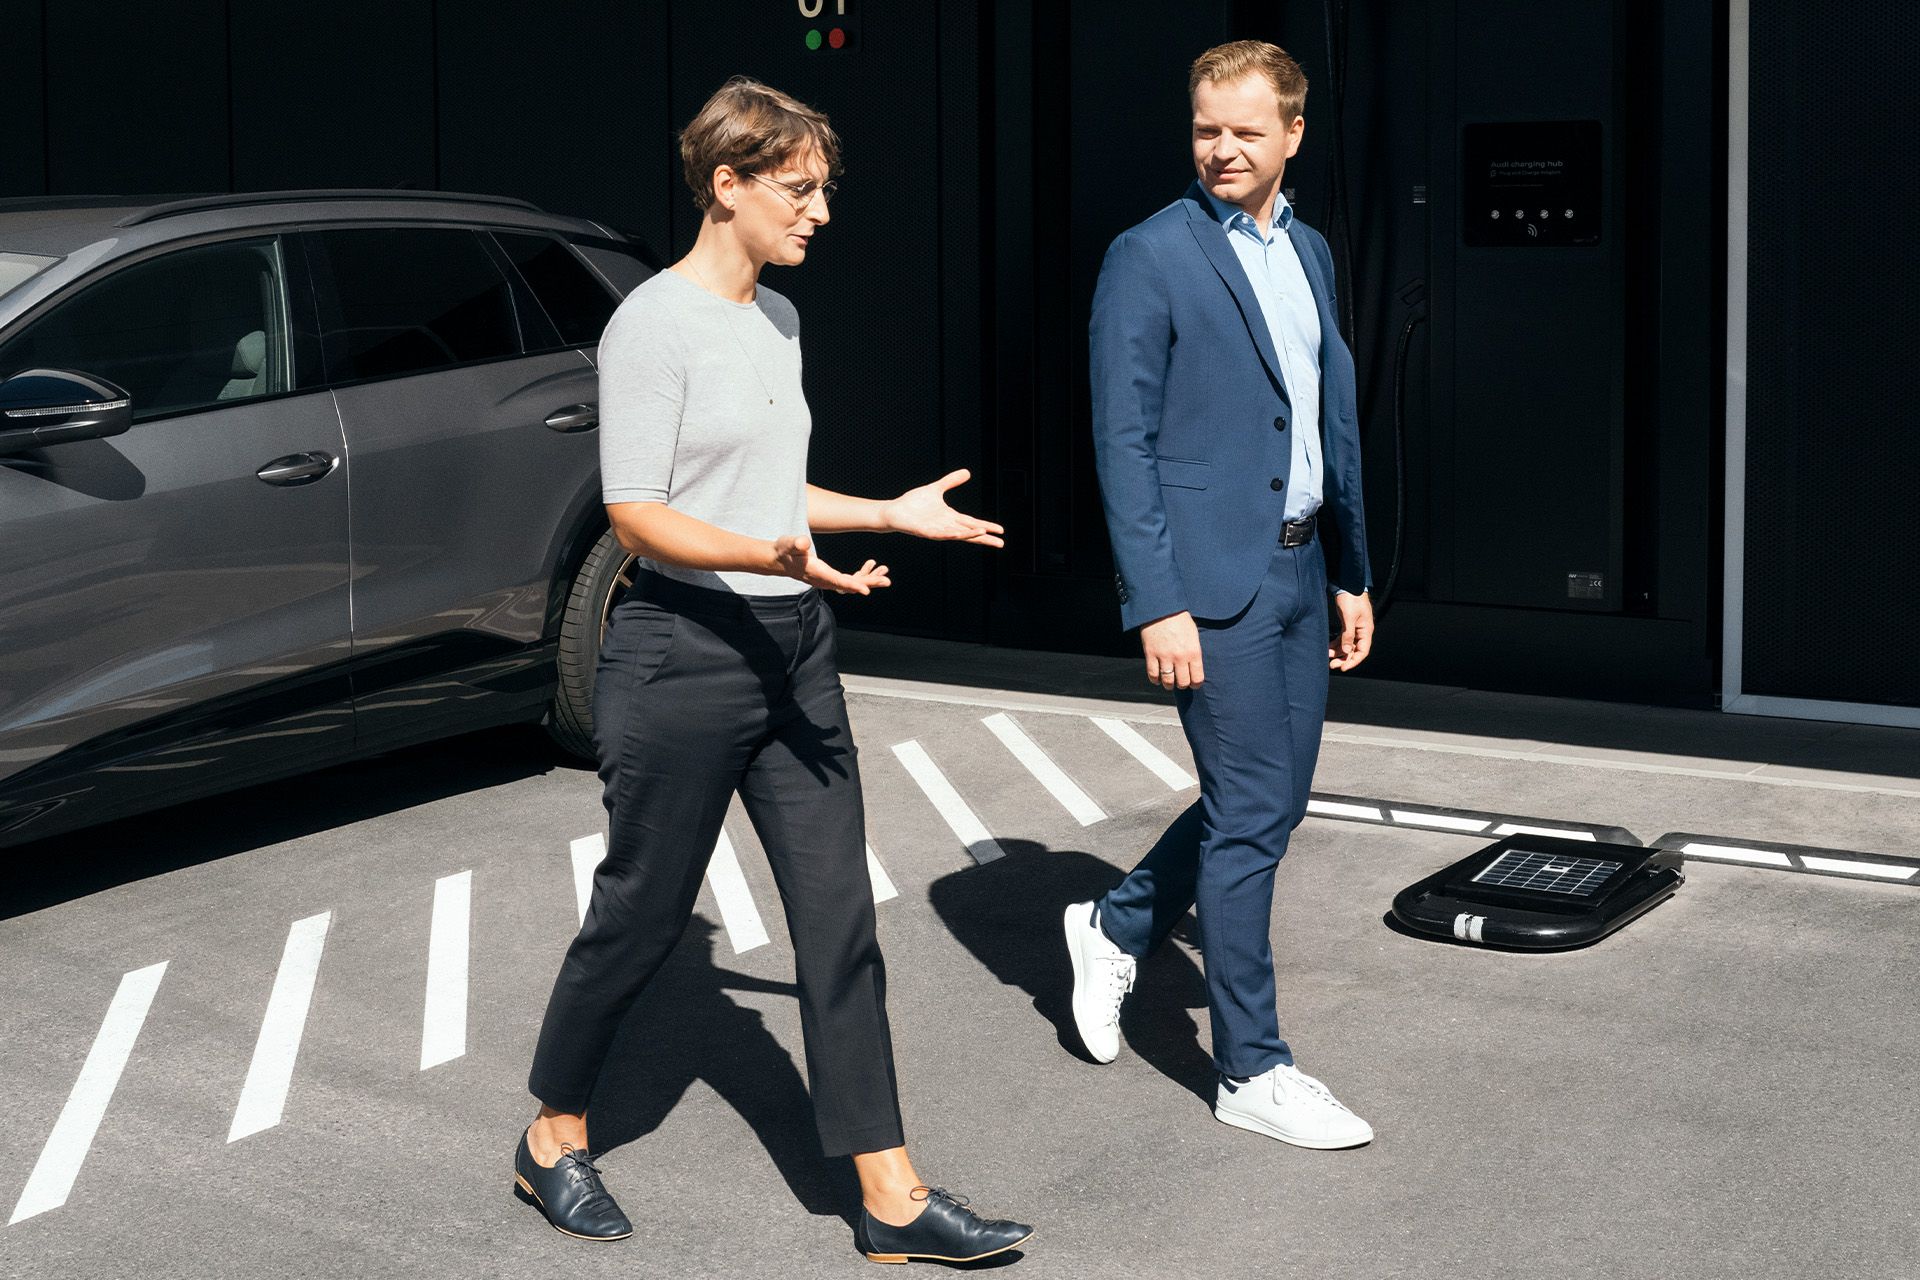 La Dra. Johanna Klewitz y Malte Vömel, expertos en sostenibilidad, caminando por el aparcamiento frente al Audi charging hub de Núremberg.